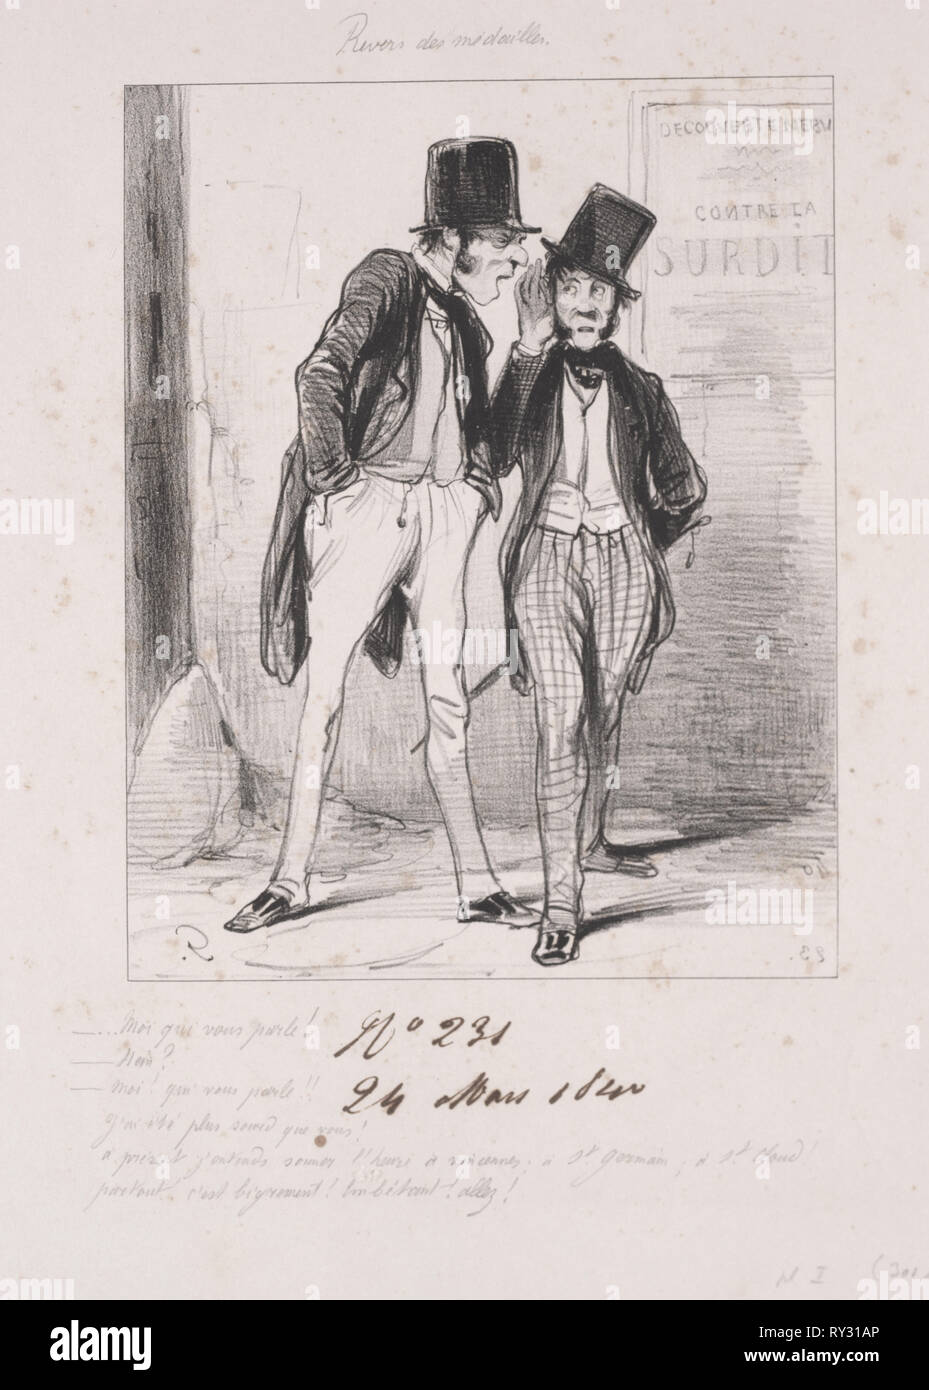 Revers des médailles:  Moi qui vous parle, 1840. Paul Gavarni (French, 1804-1866). Lithograph Stock Photo